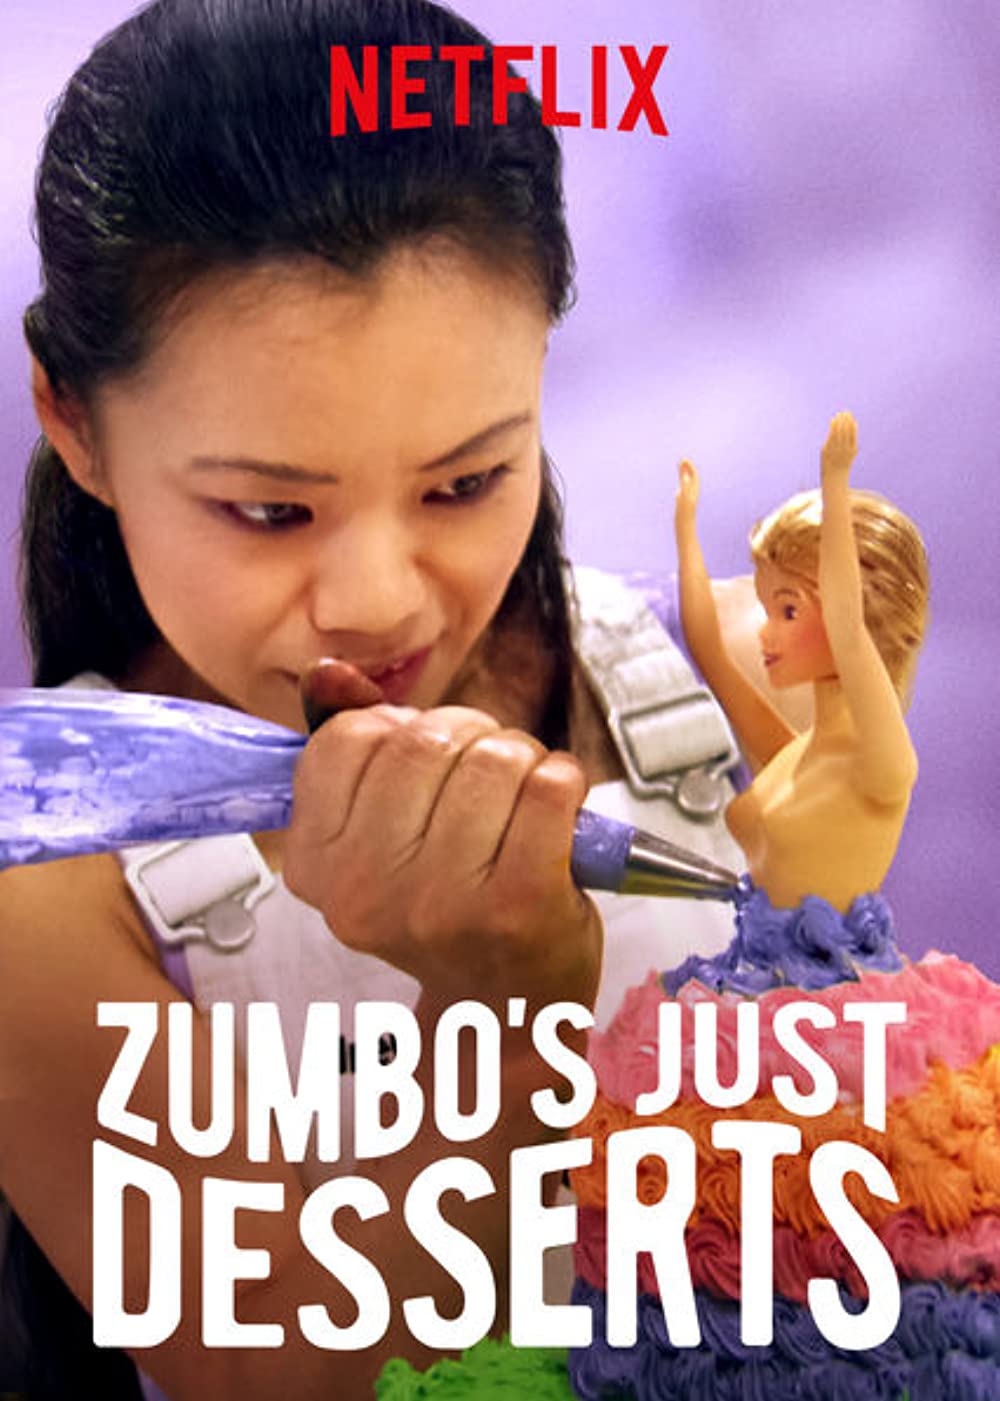 Zumbo's just desserts